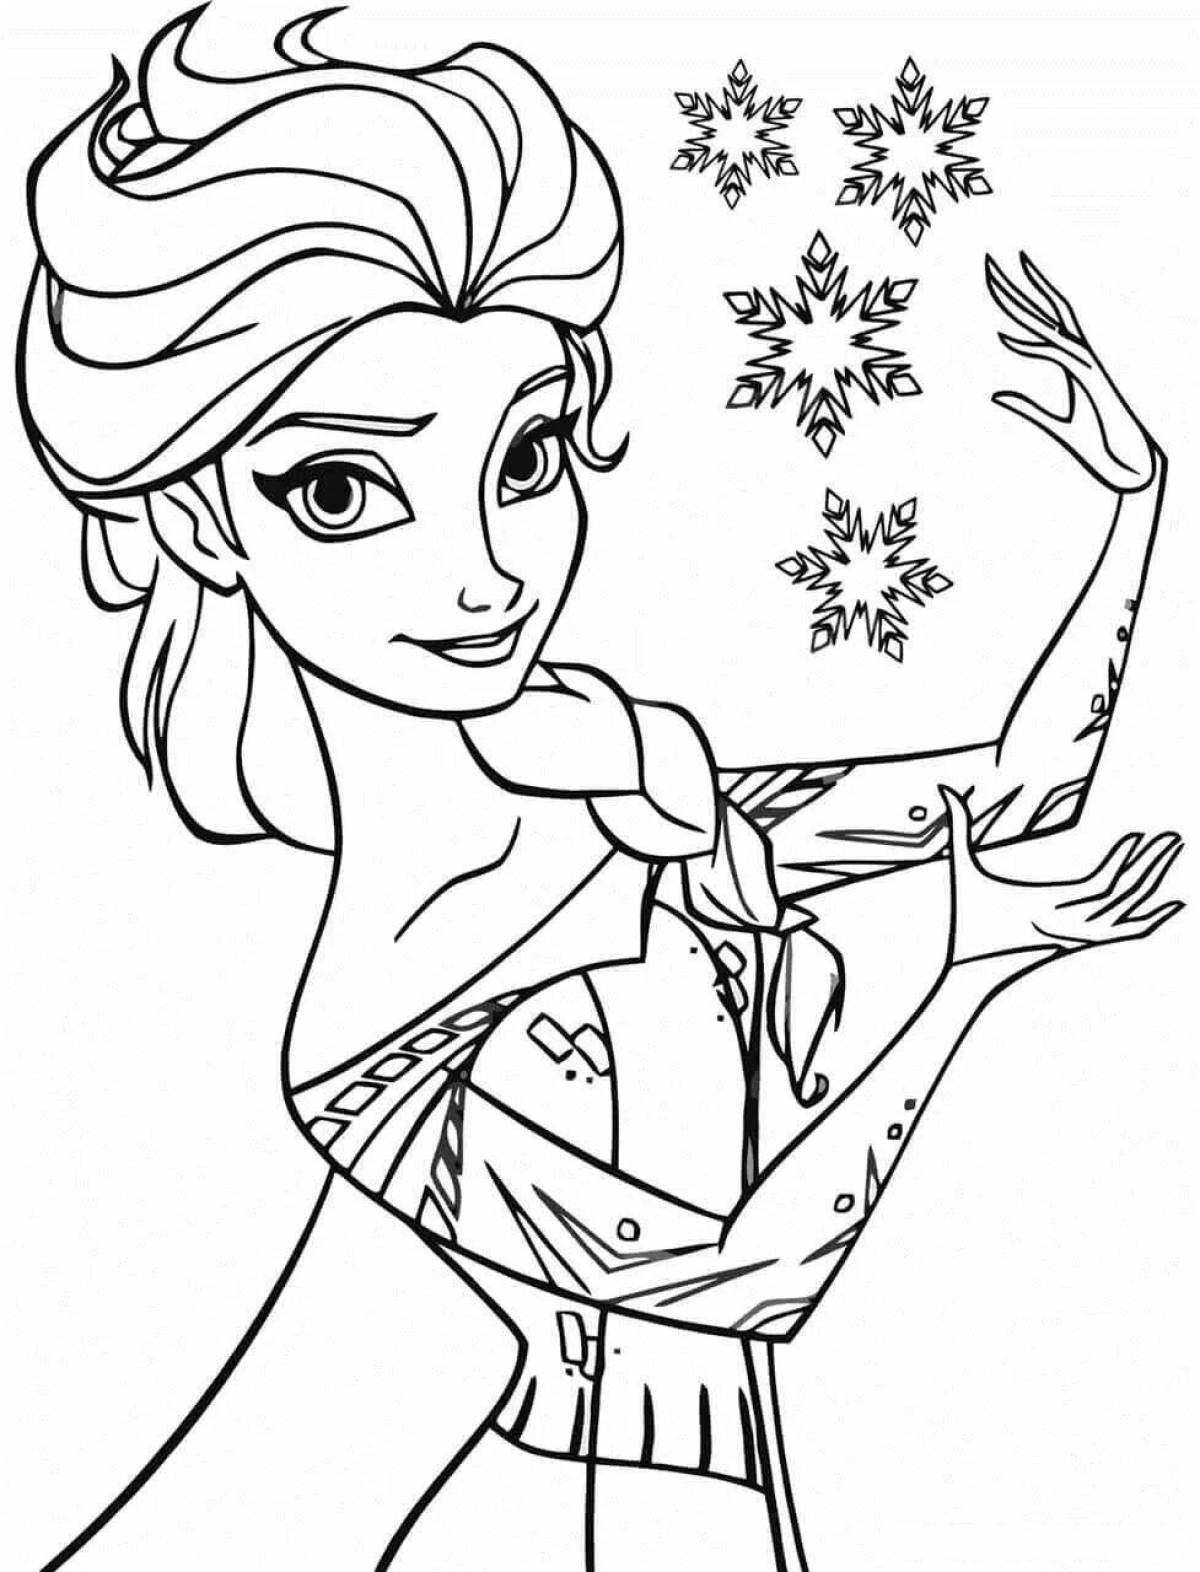 Elsa's dazzling coloring book